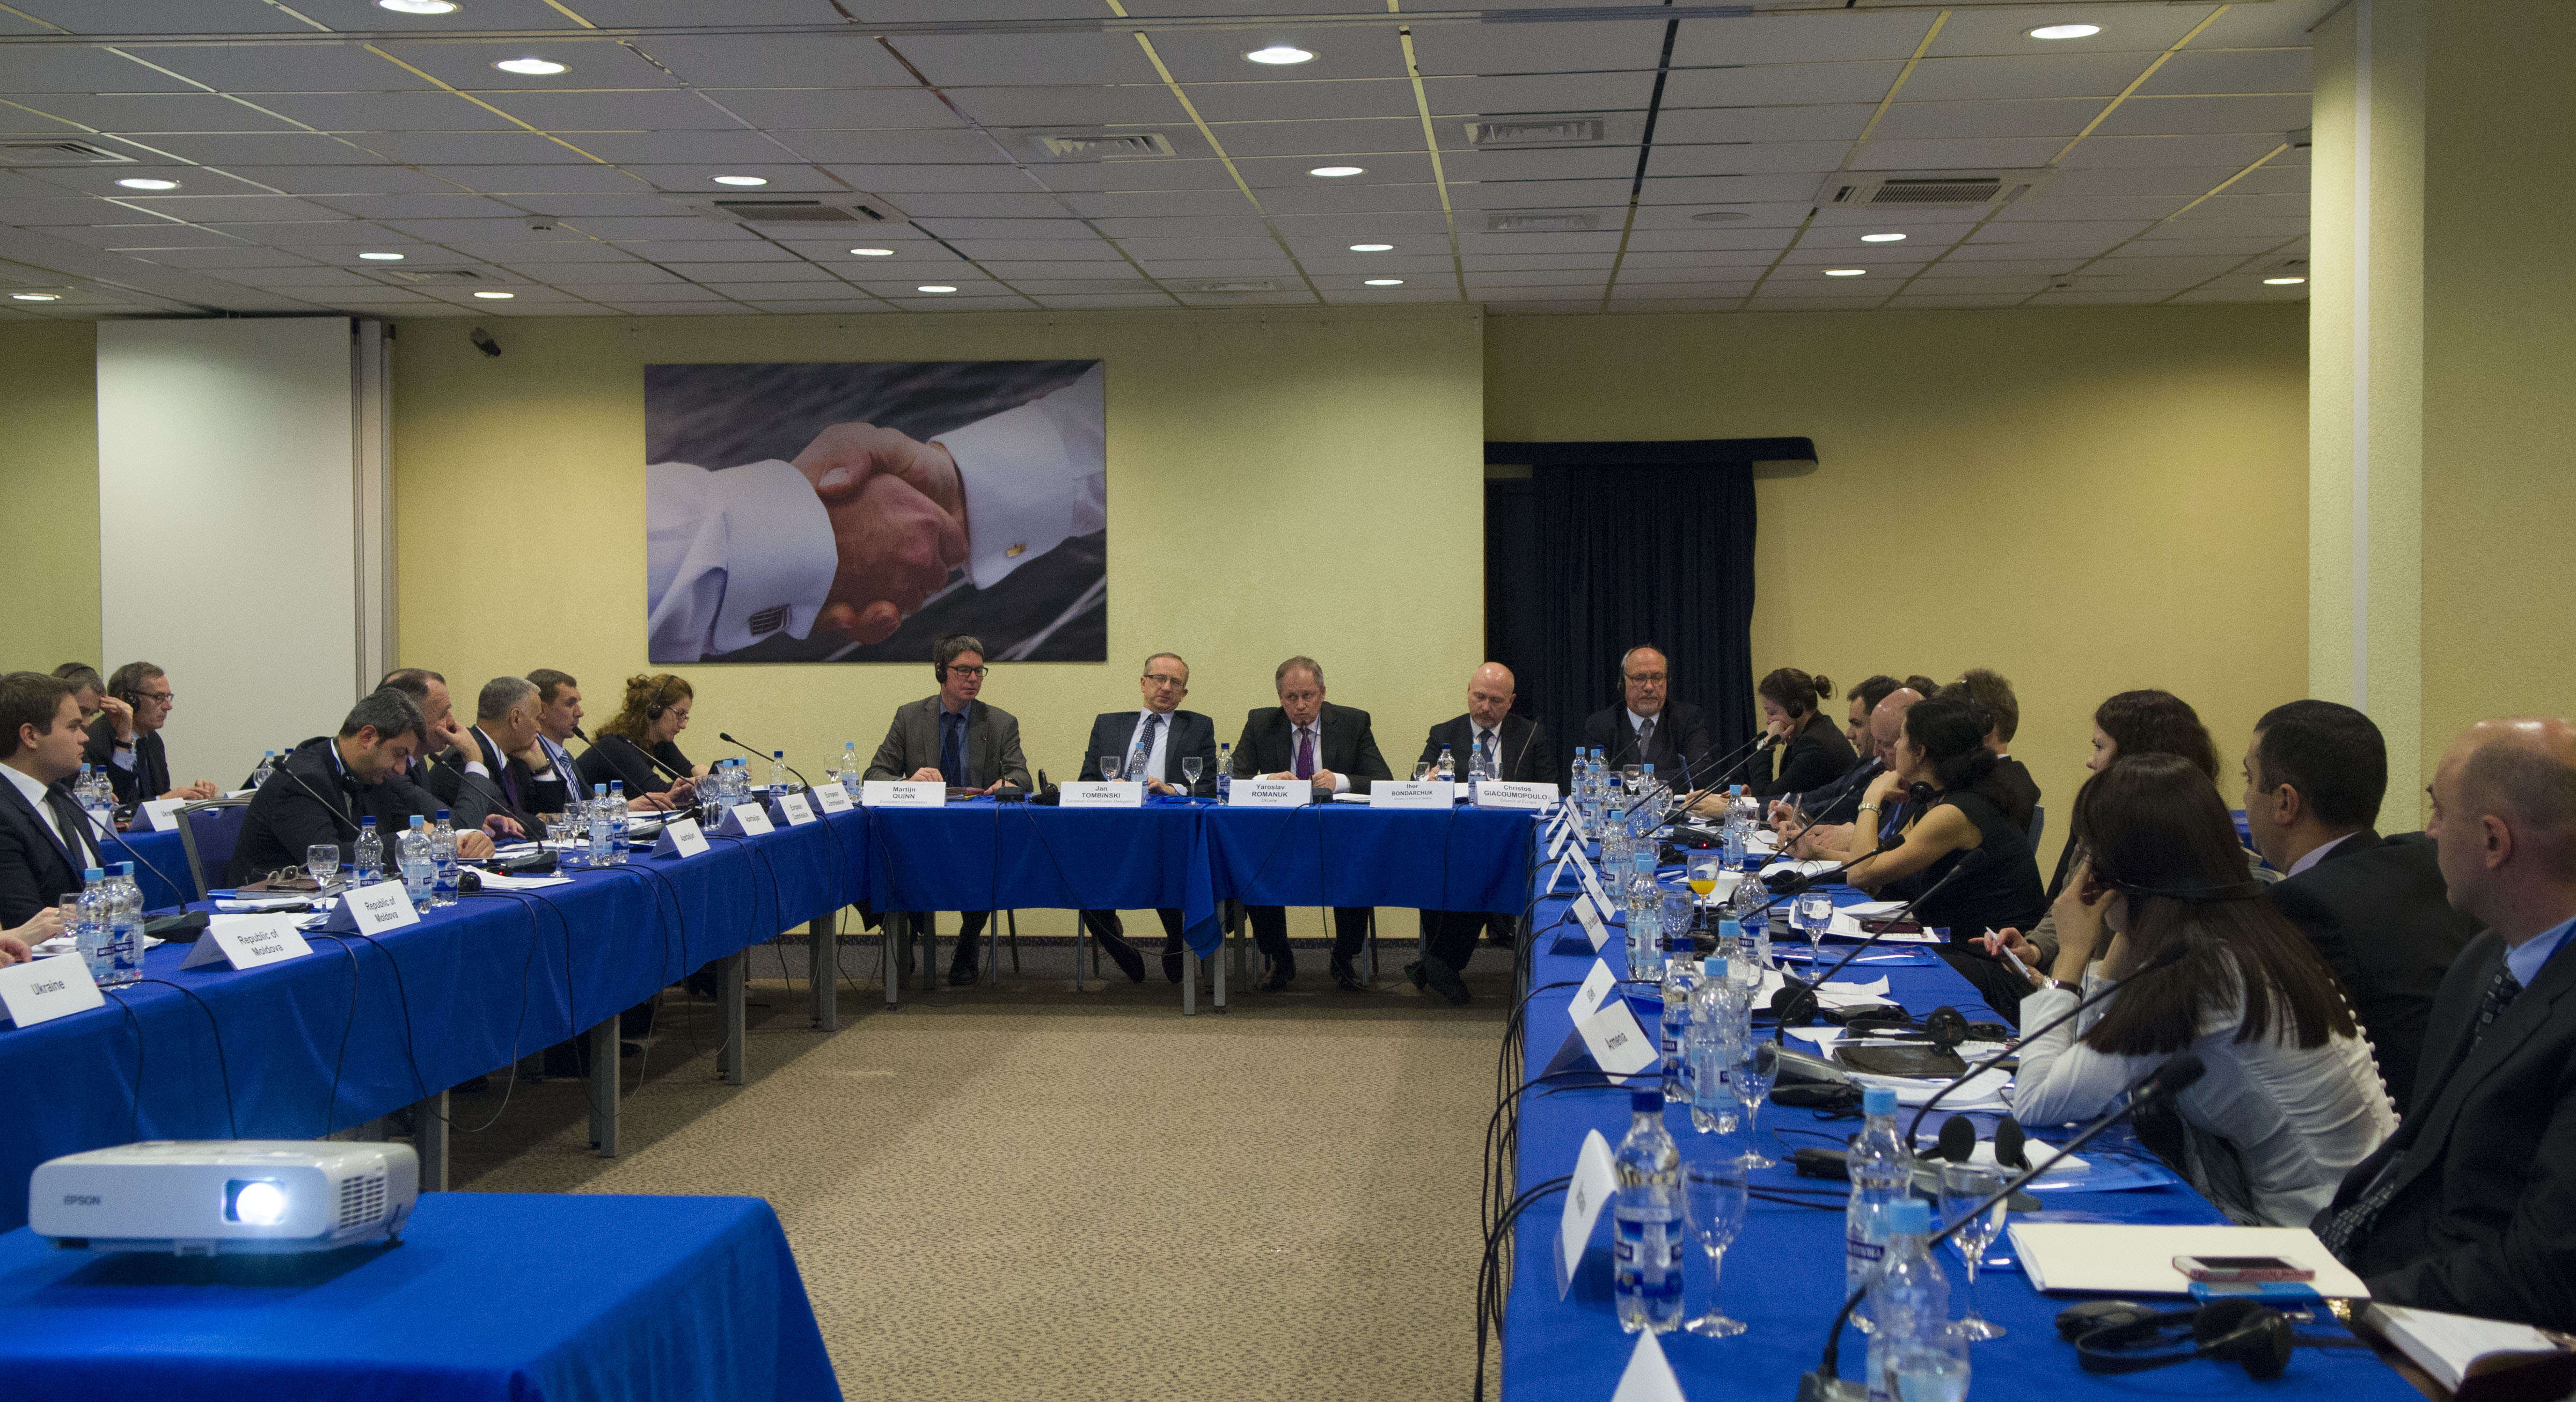 В рамках Восточного партнерства состоялась встреча по обсуждению эффективности реформ судебной системы